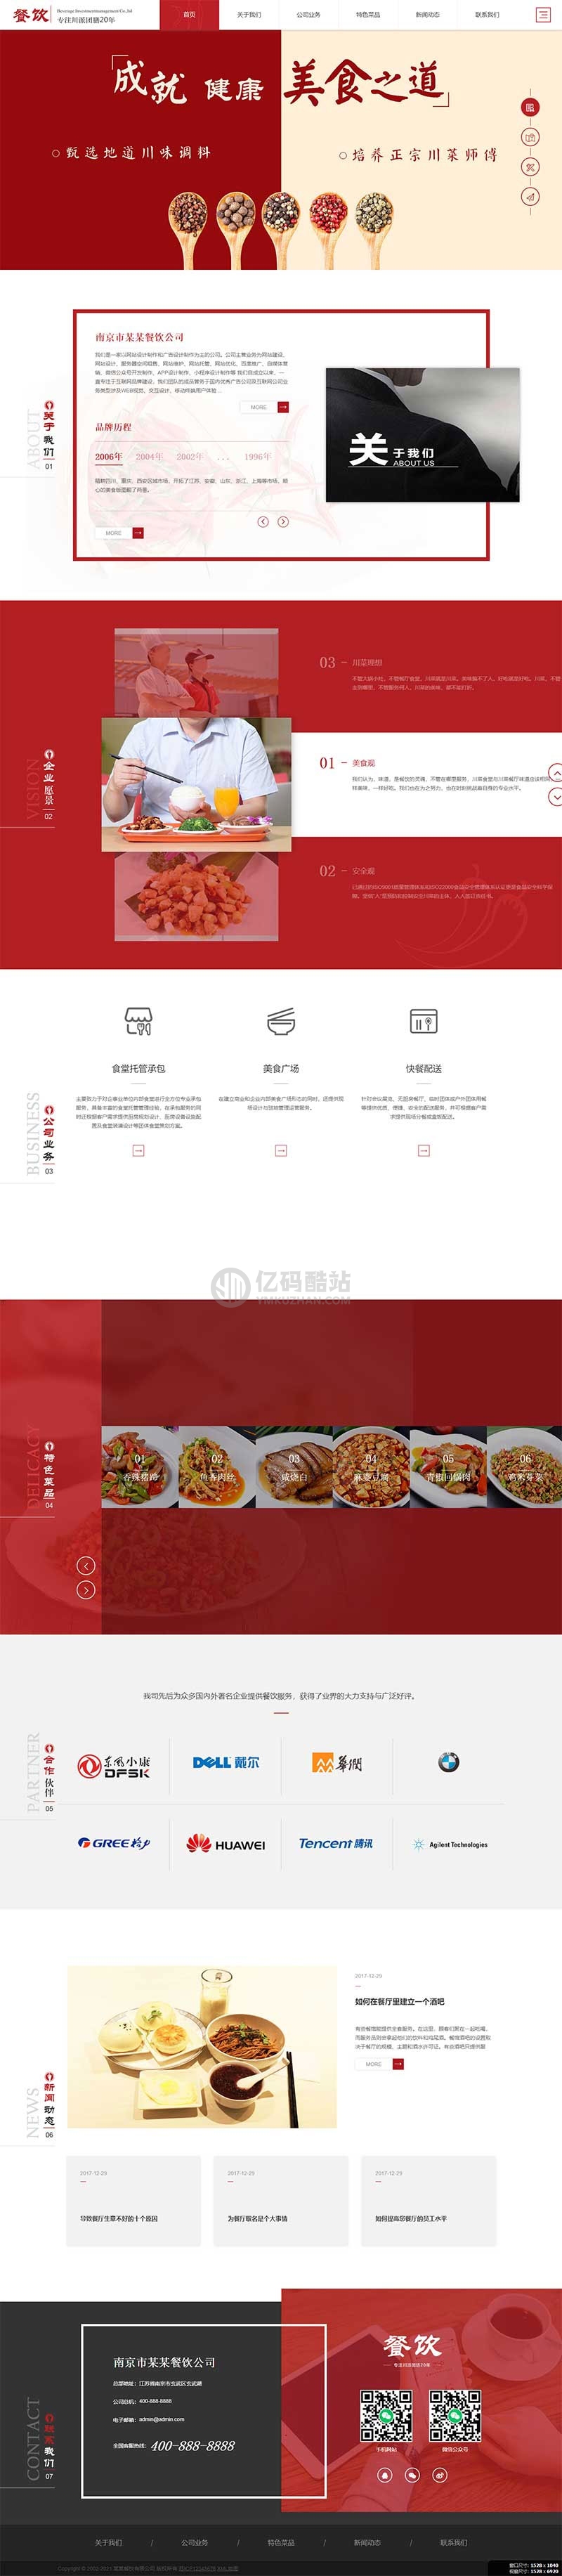 织梦dedecms红色高端响应式美食餐饮集团餐饮投资管理公司网站模板 自适应手机端插图